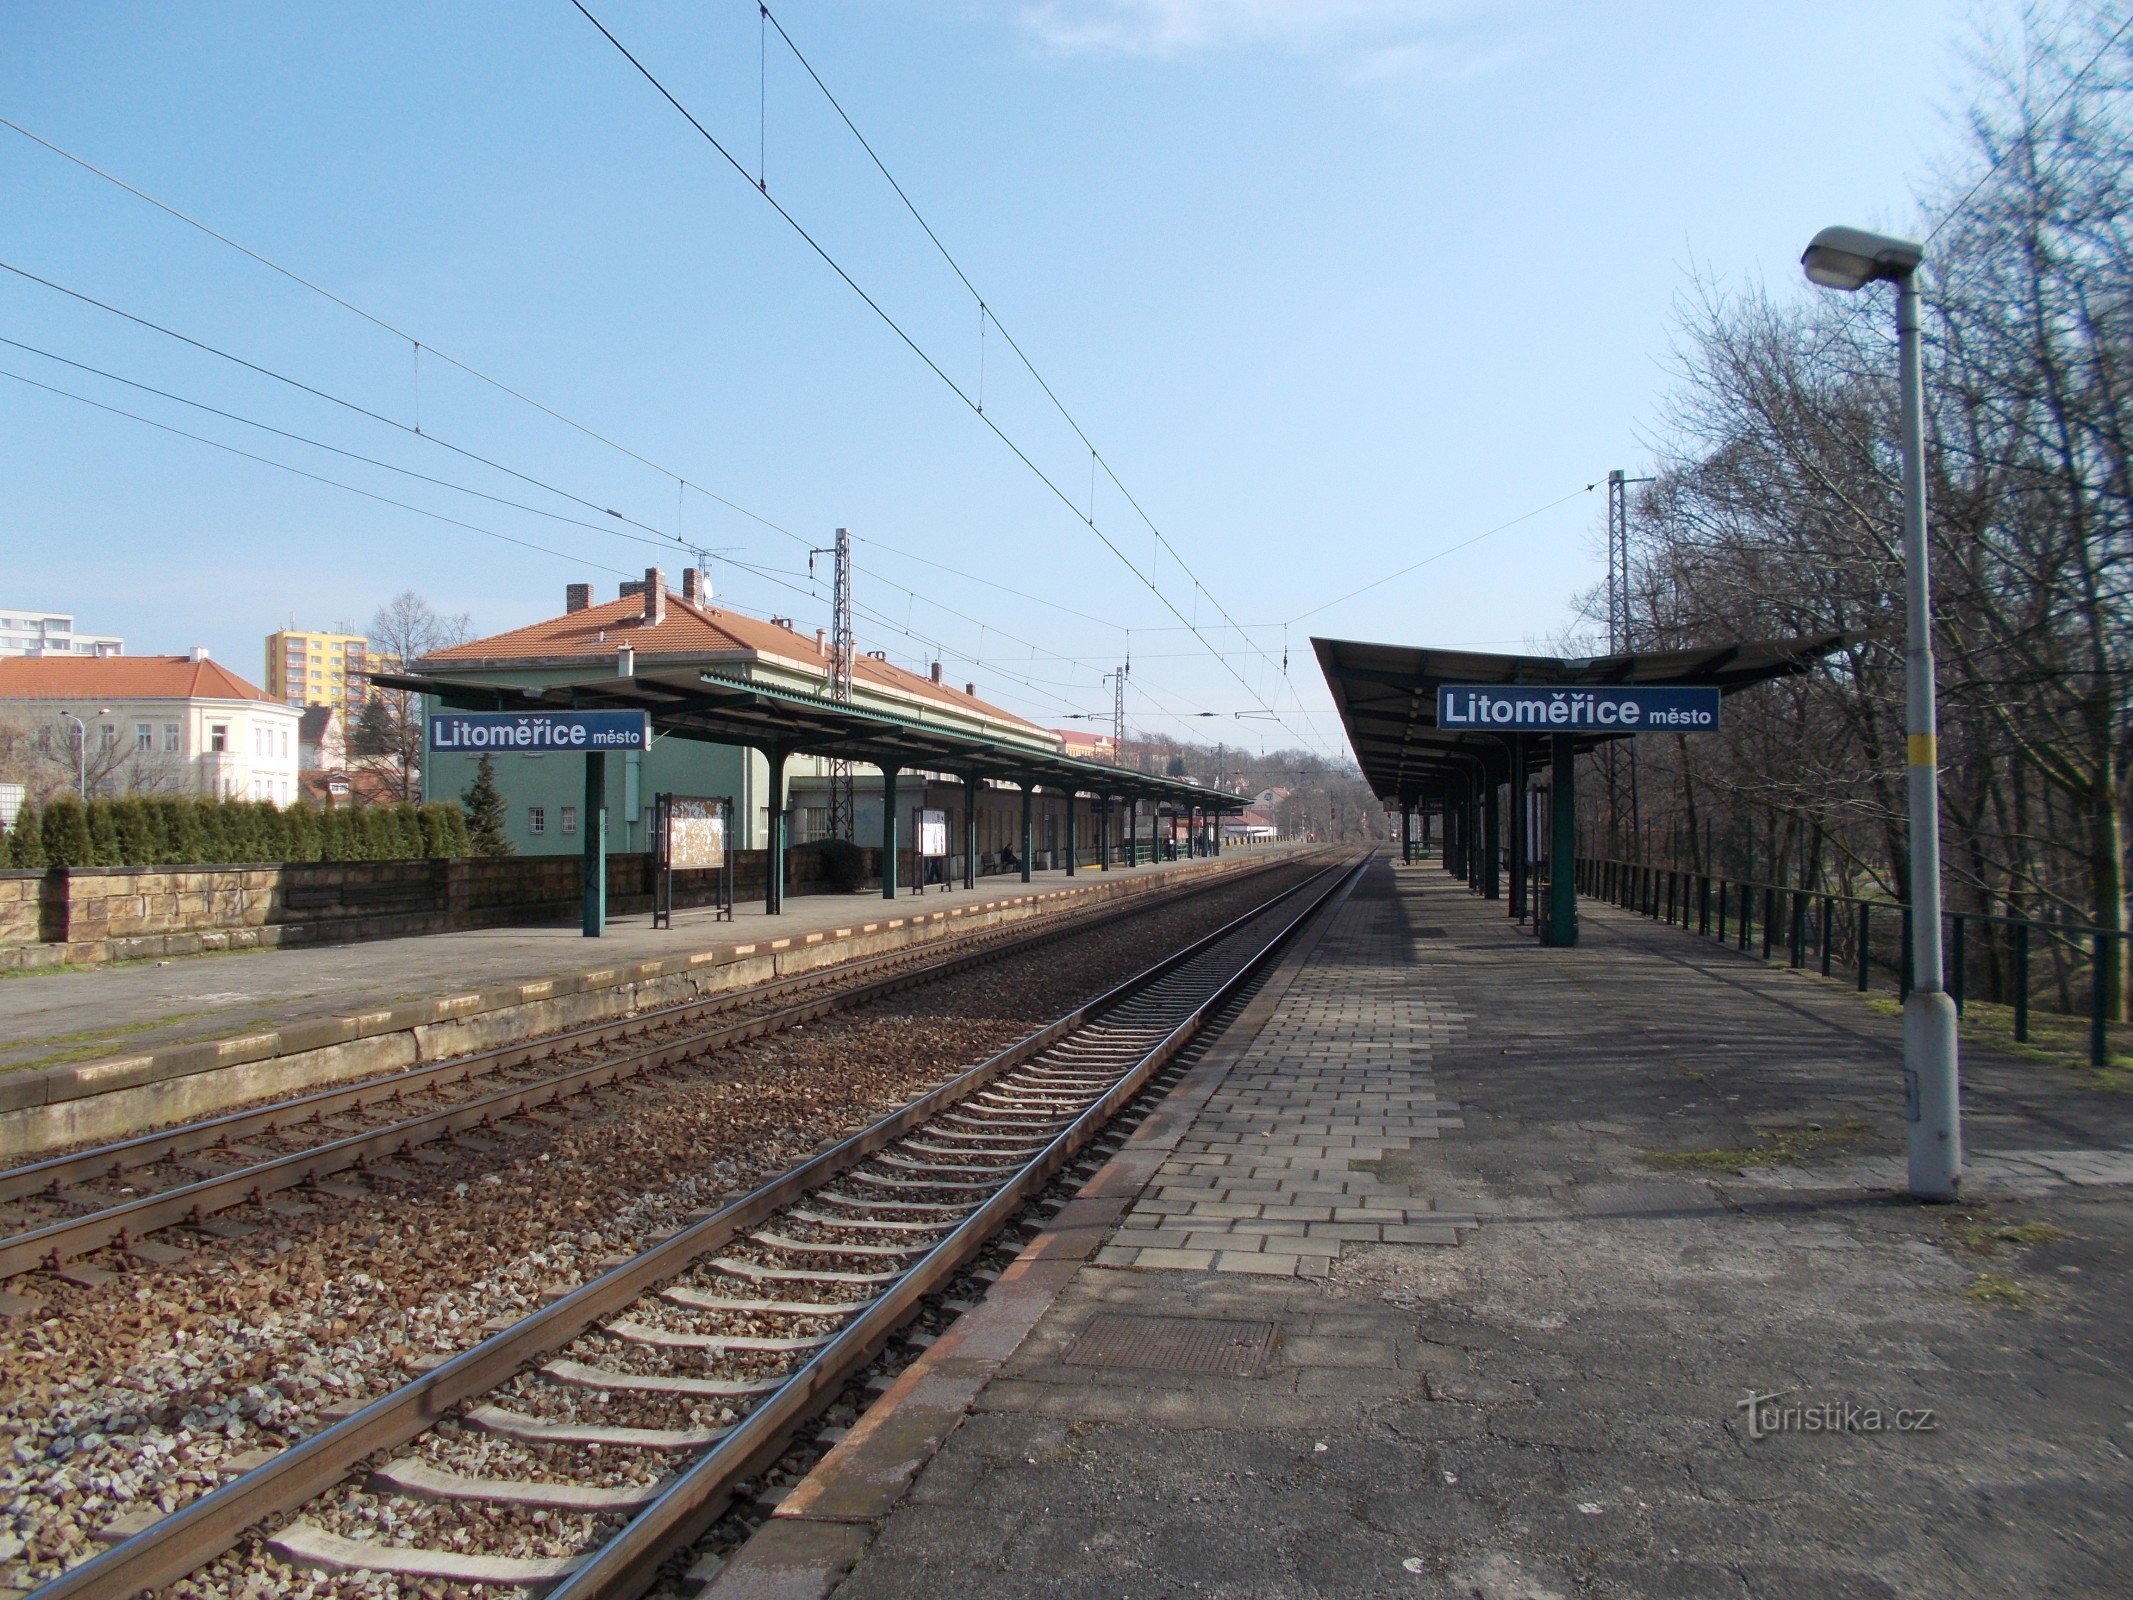 Thị trấn Litoměřice - ga đường sắt